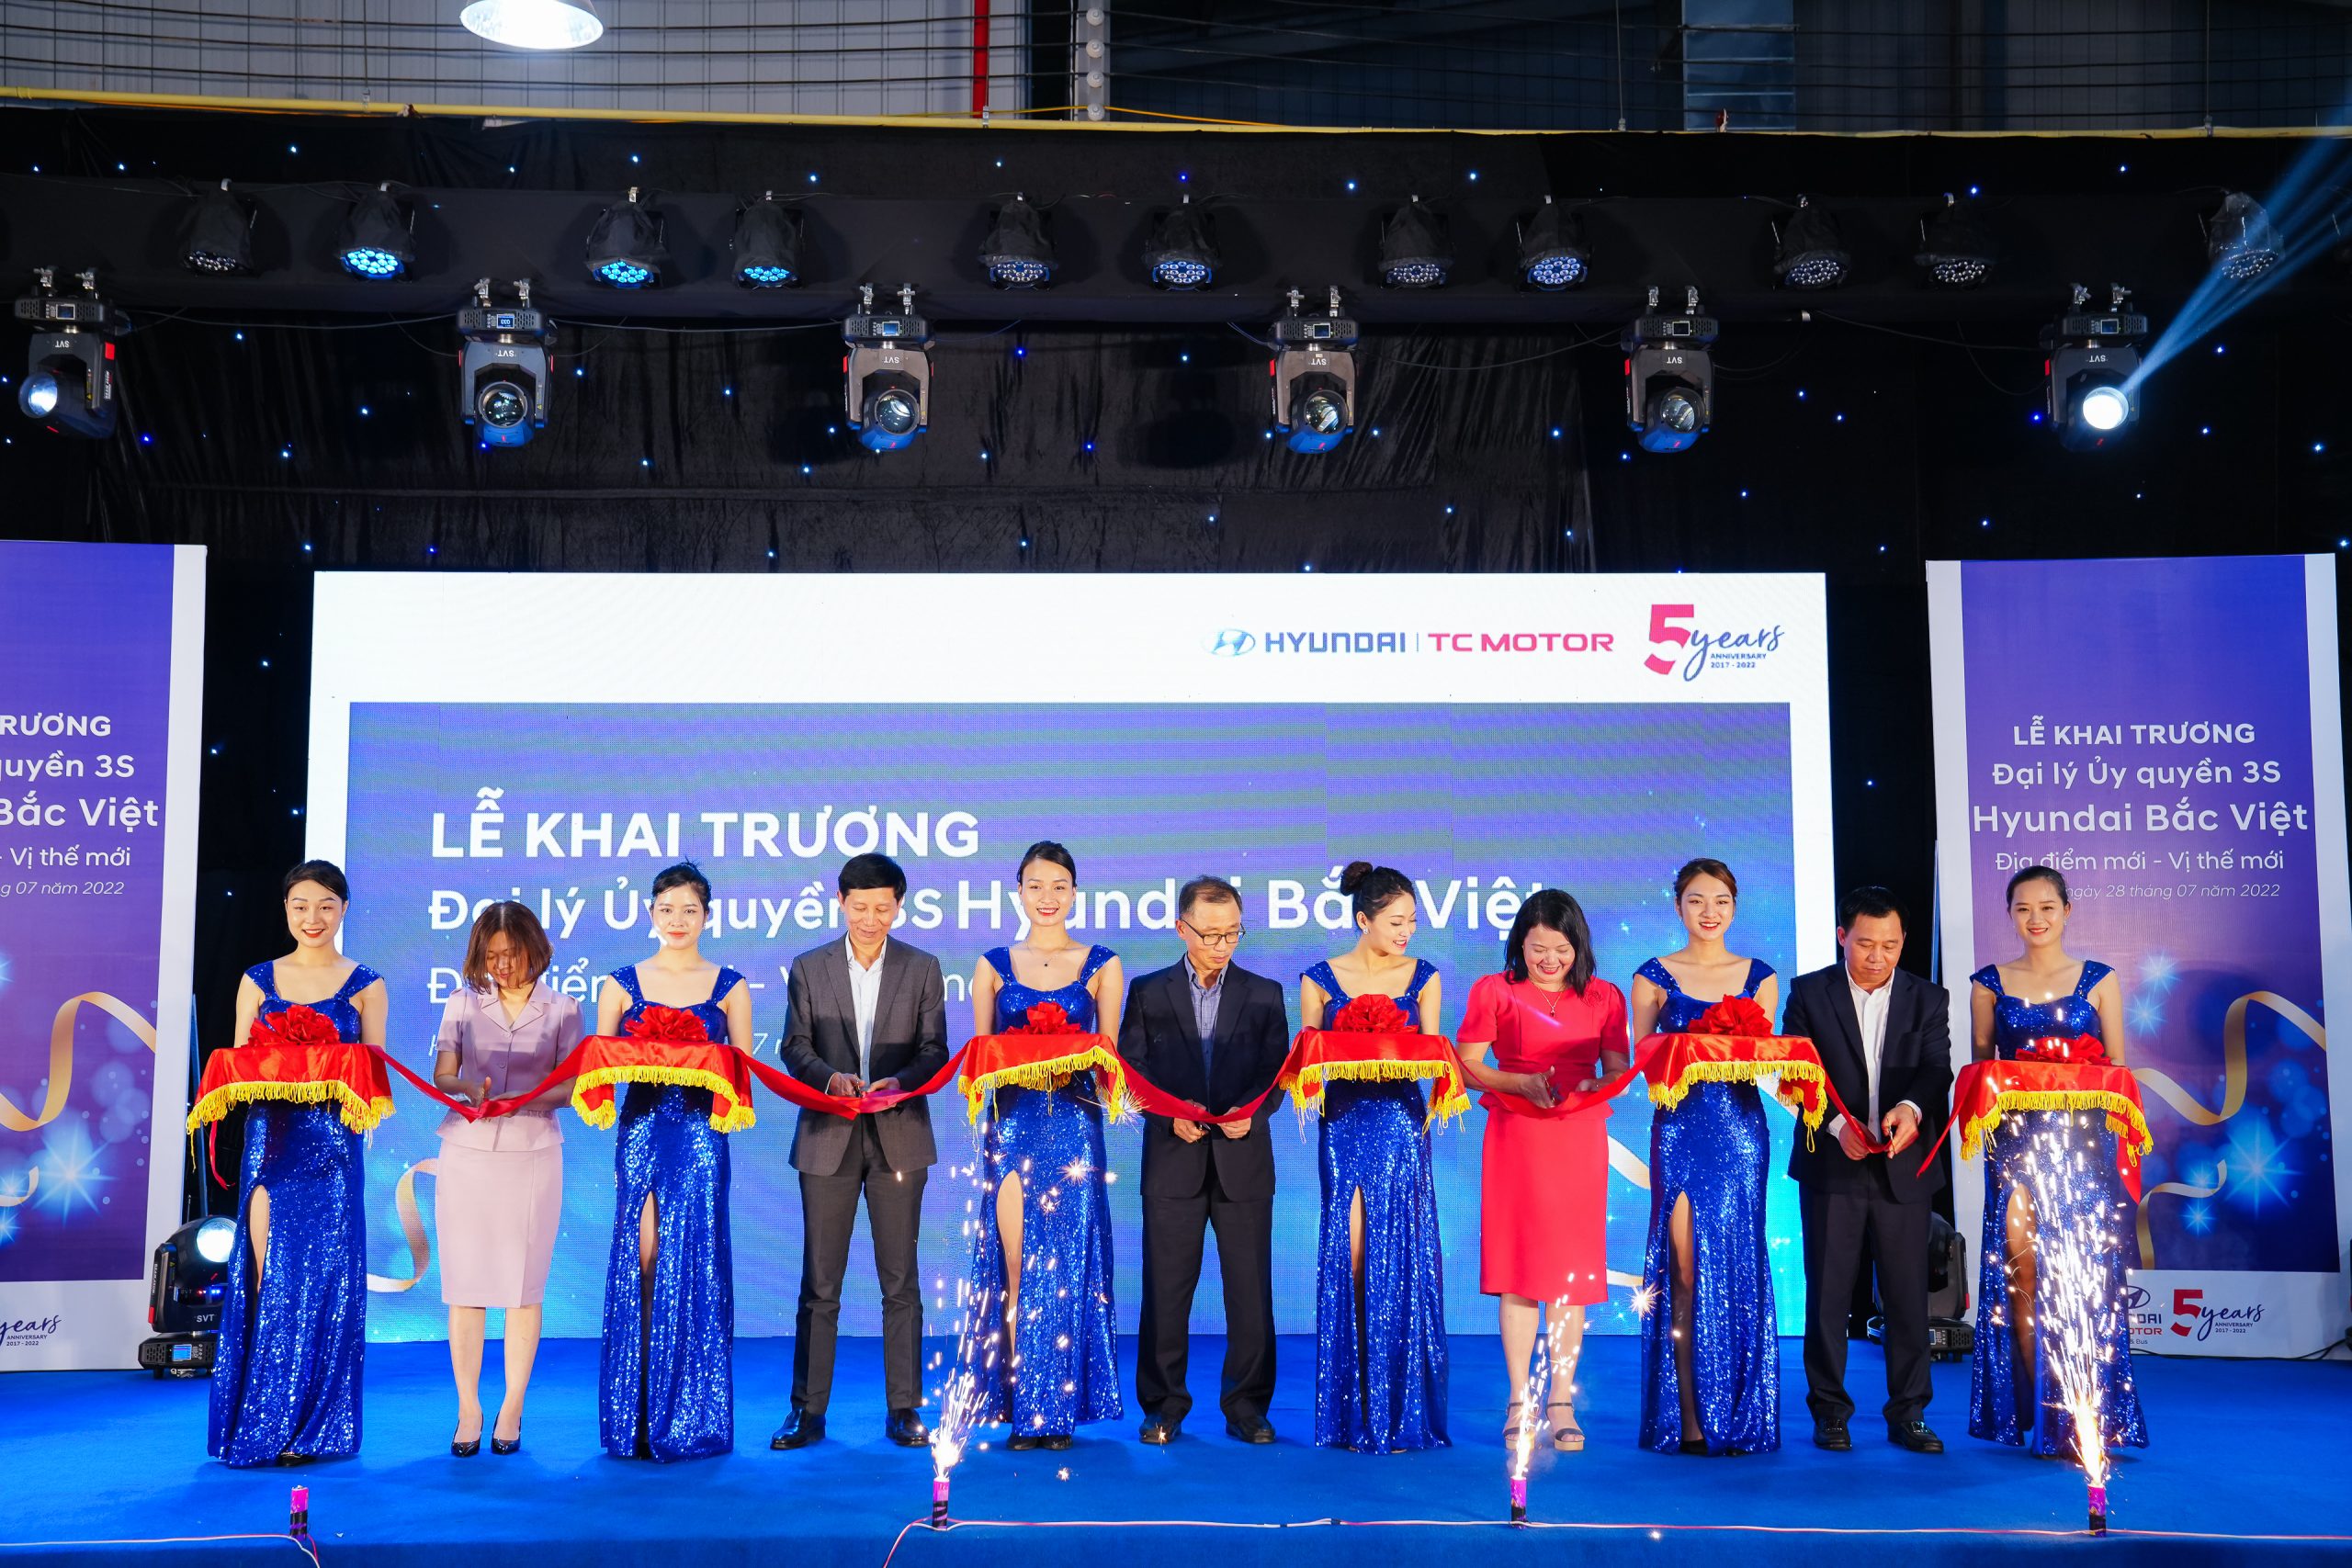 Hyundai Bắc Việt khai trương ” địa điểm mới- vị thế mới”